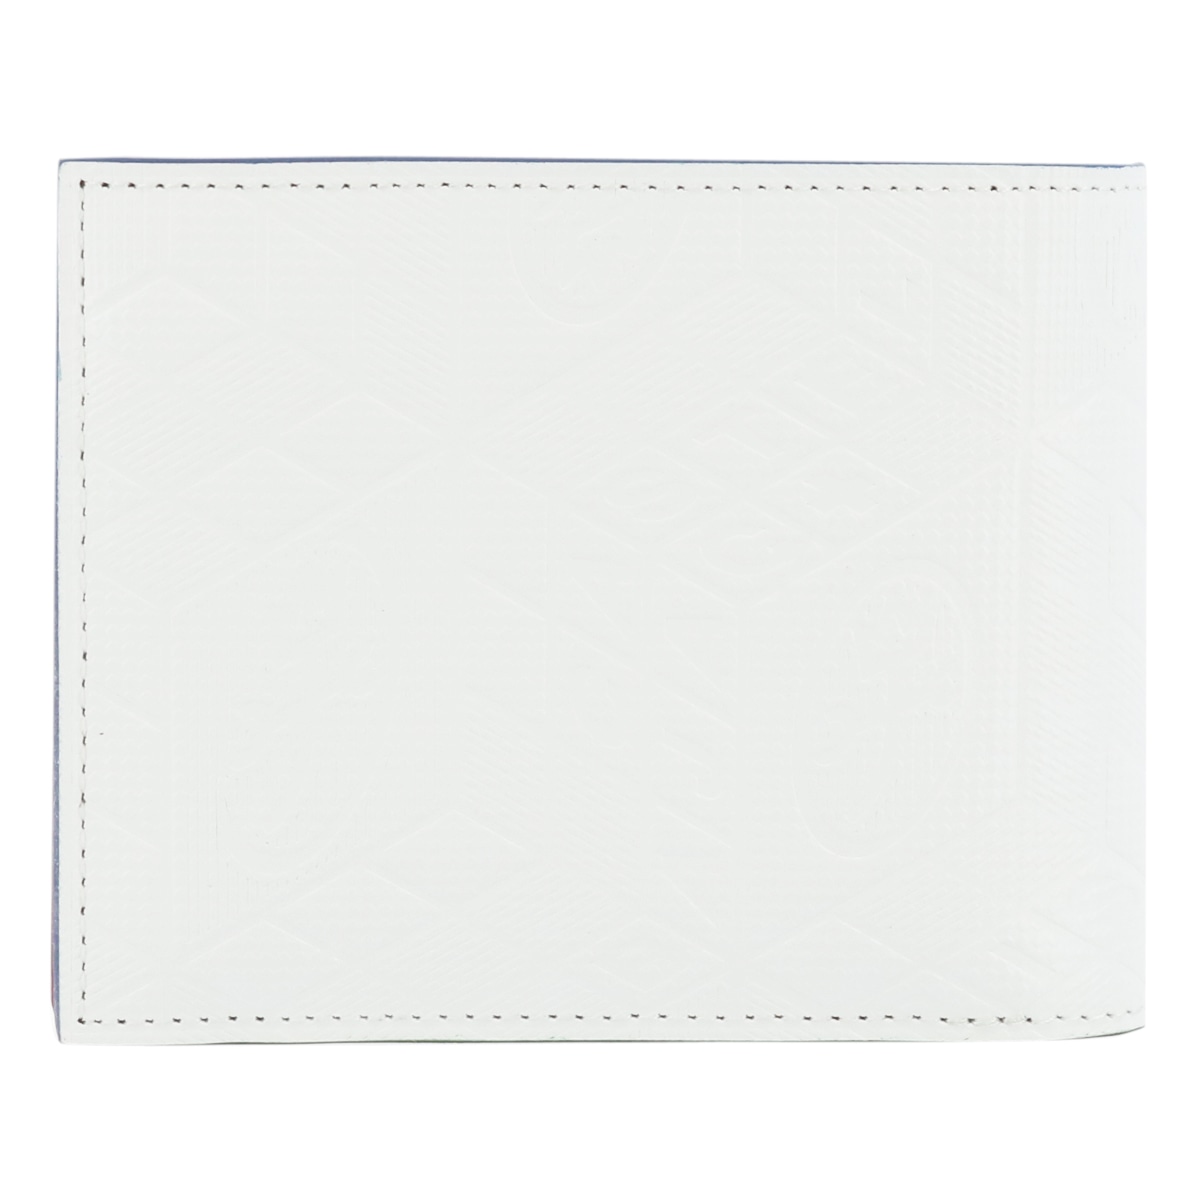 カステルバジャック 二つ折り財布 タタン メンズ 067614 CASTELBAJAC | 牛革 本革 レザー